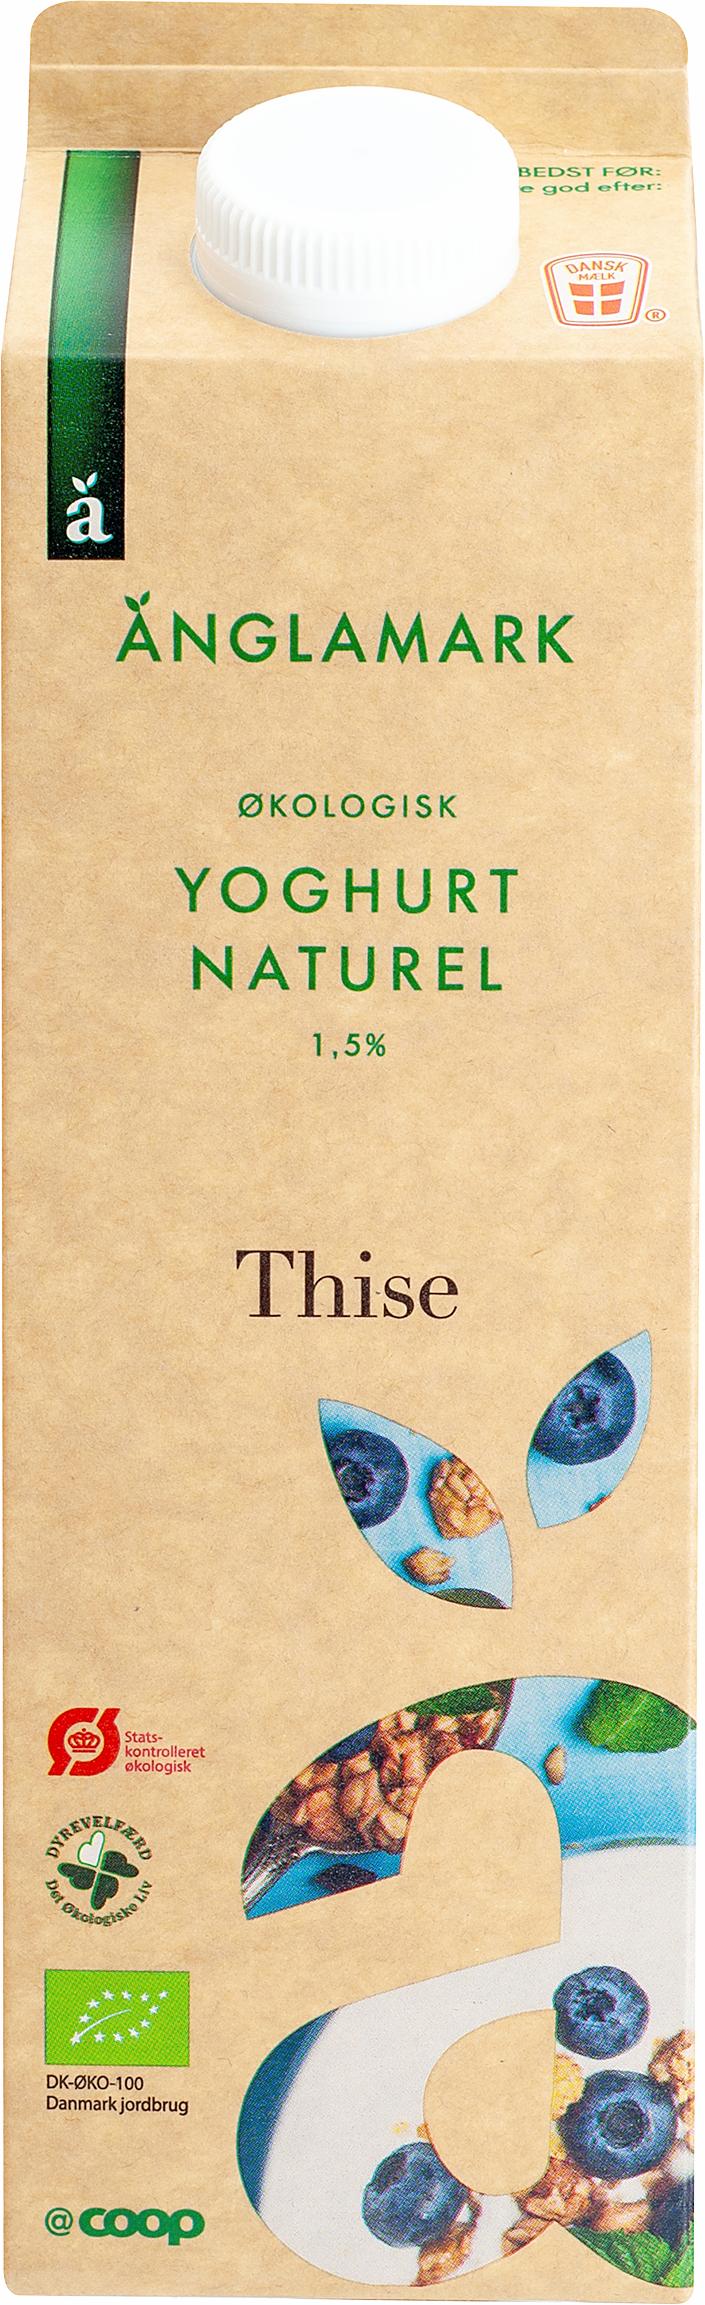 Änglamark Yoghurt Naturel 1,5% 1000g